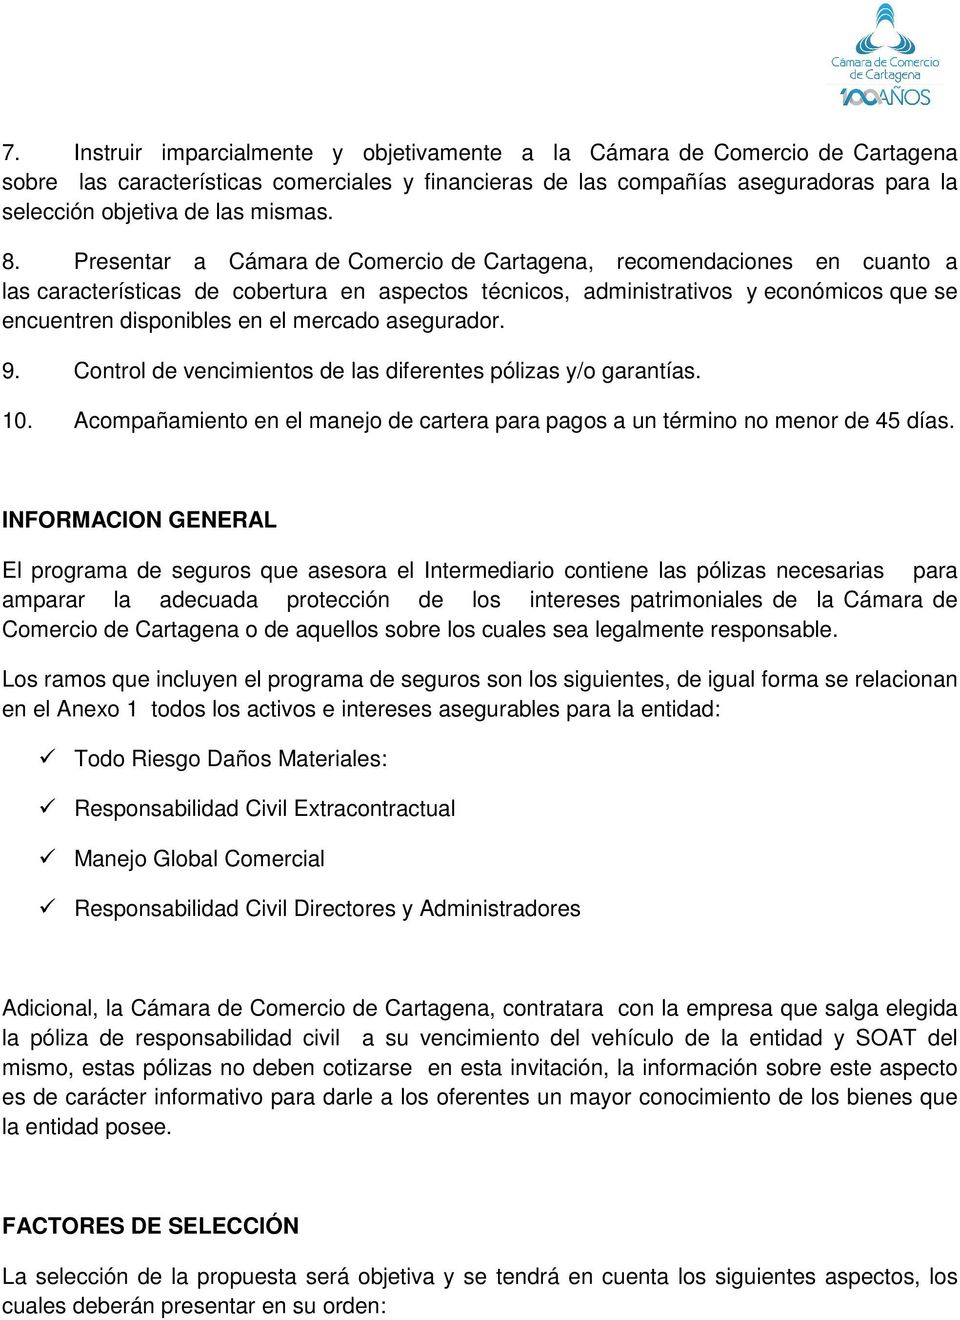 Presentar a Cámara de Comercio de Cartagena, recomendaciones en cuanto a las características de cobertura en aspectos técnicos, administrativos y económicos que se encuentren disponibles en el